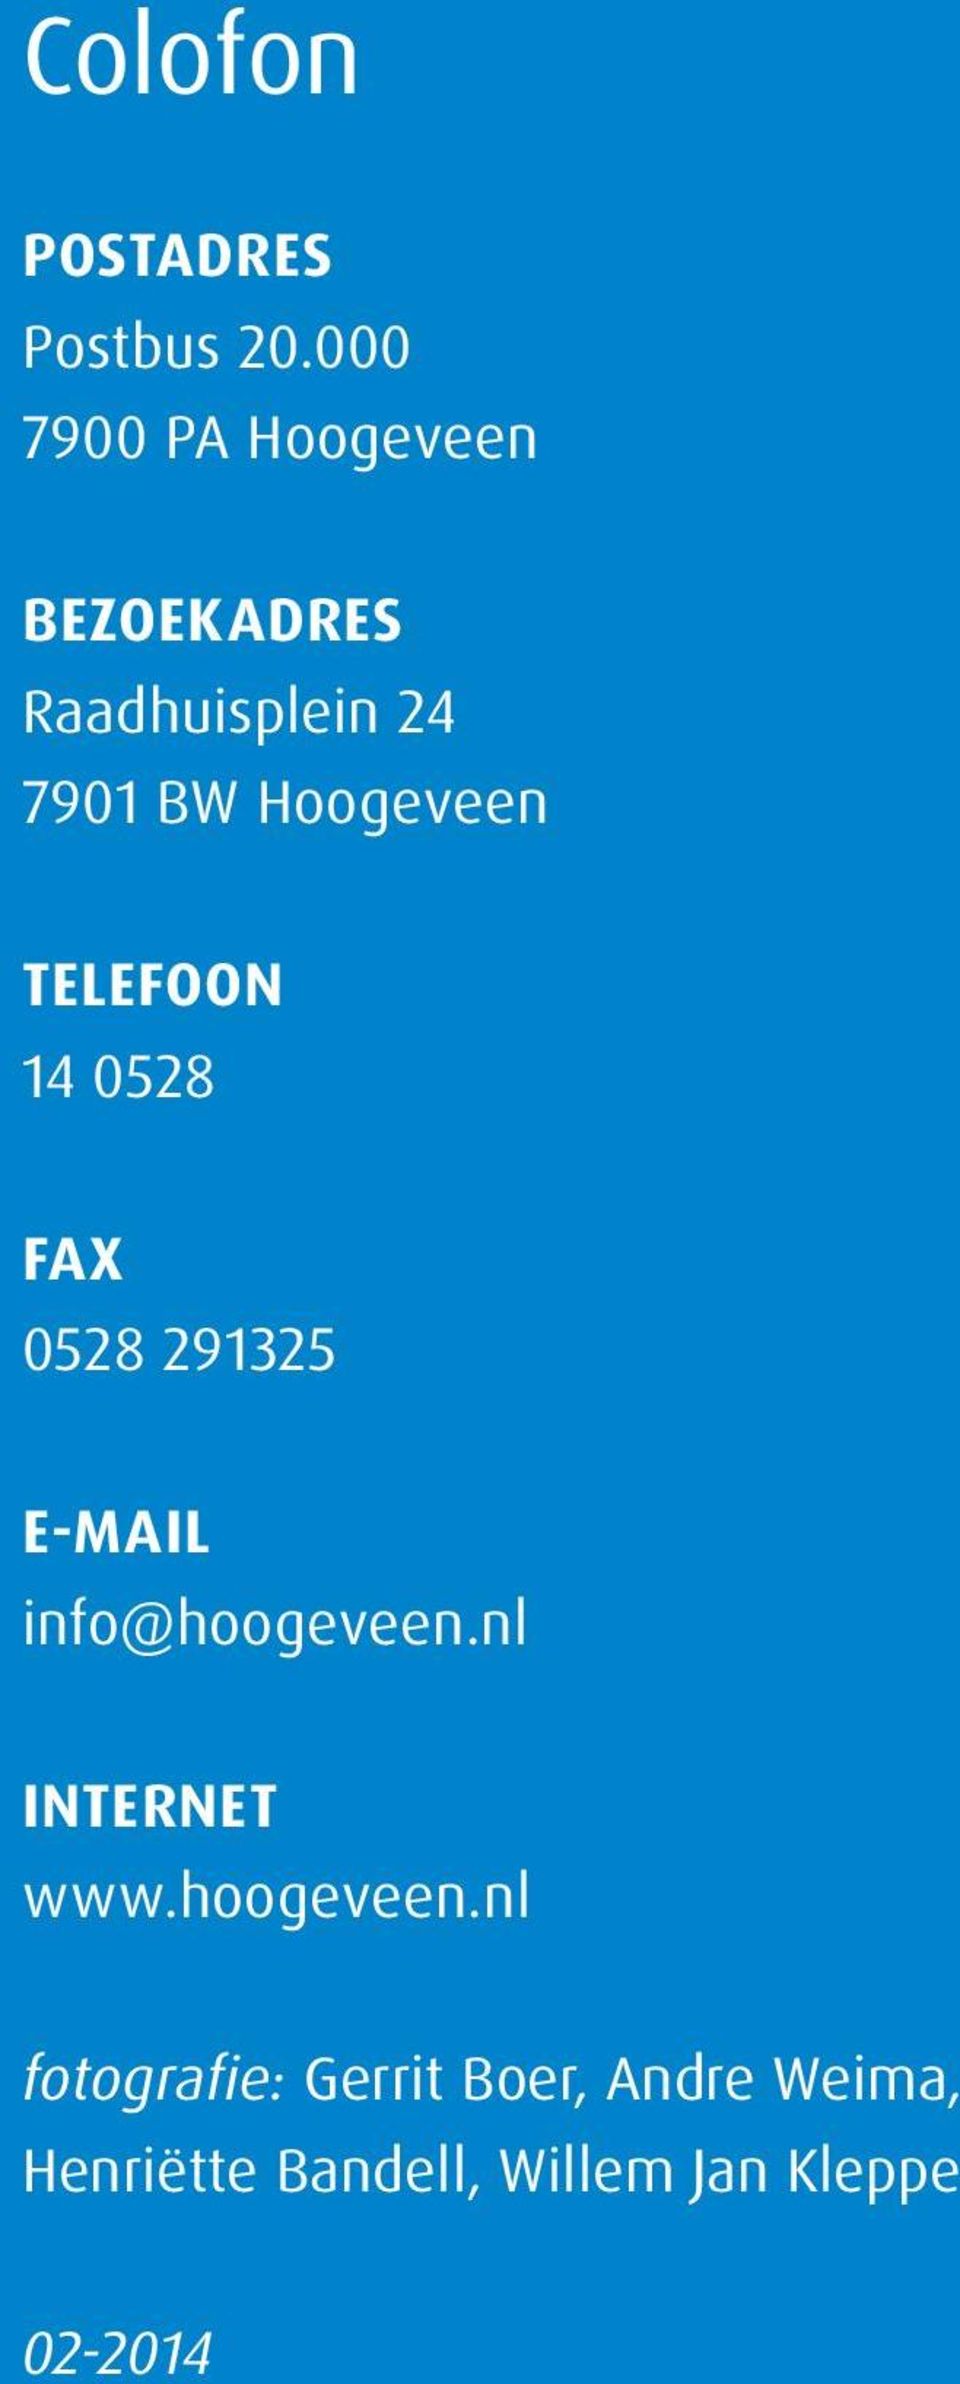 Hoogeveen Telefoon 14 0528 Fax 0528 291325 E-mail info@hoogeveen.